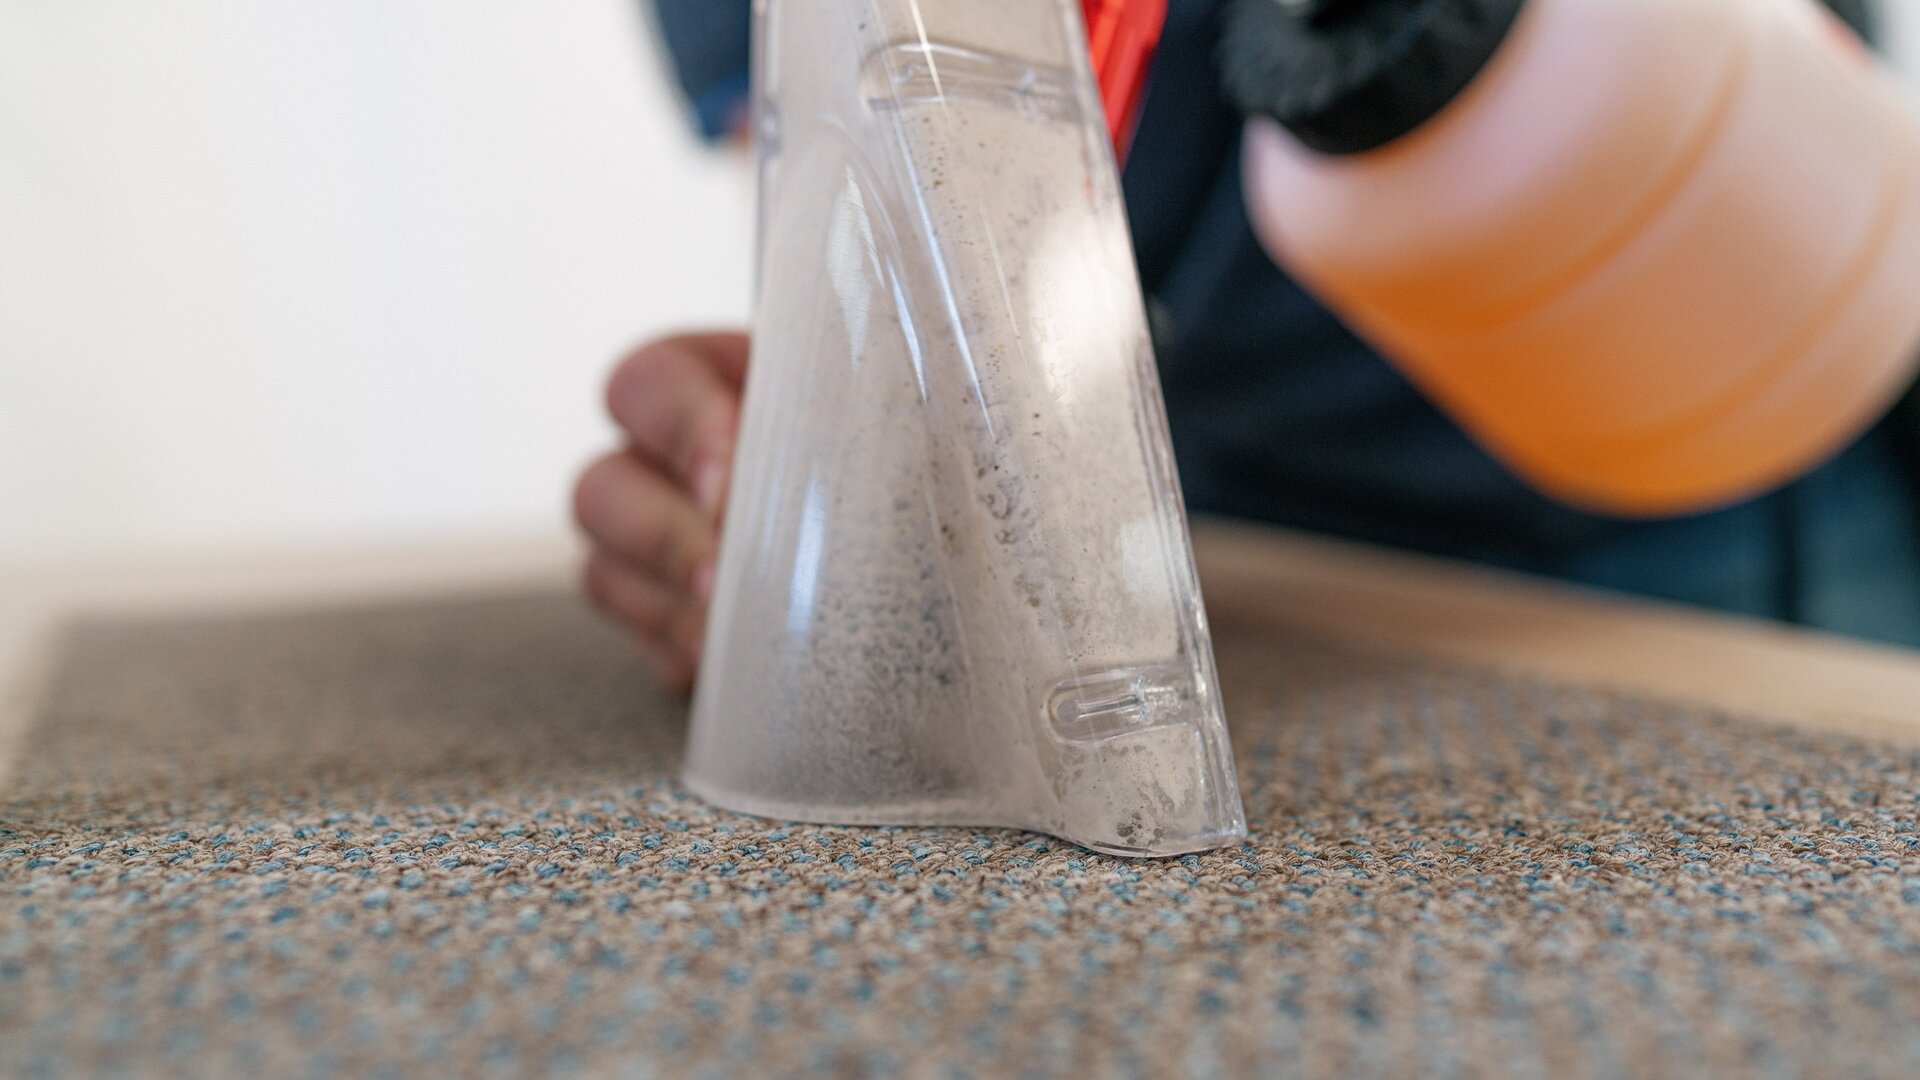 Befüllen der Sprühflasche mit speziellem Reinigungsmittel für die Innenreinigung der HYMER-Reisemobils